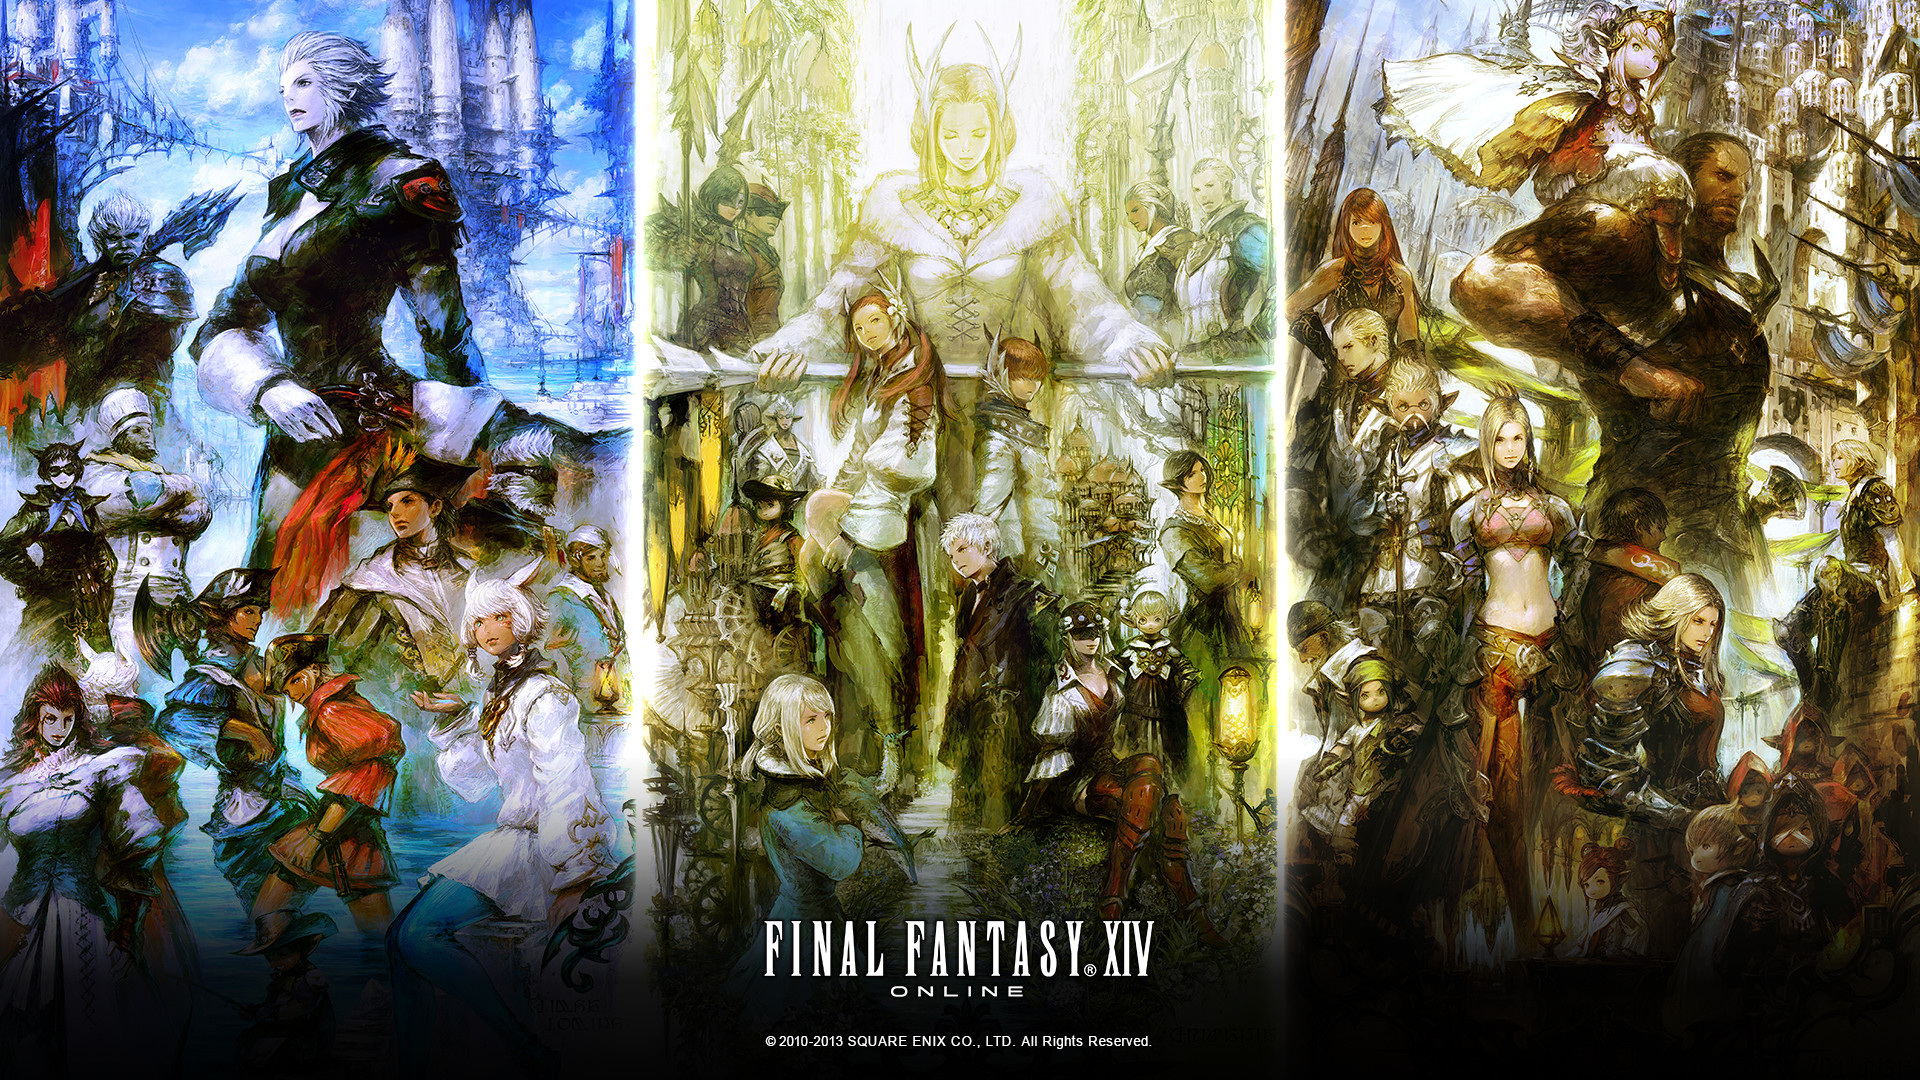 1920x1080 Final Fantasy XIV: A Realm Reborn HD Wallpaper 4 - 1920 X 1080